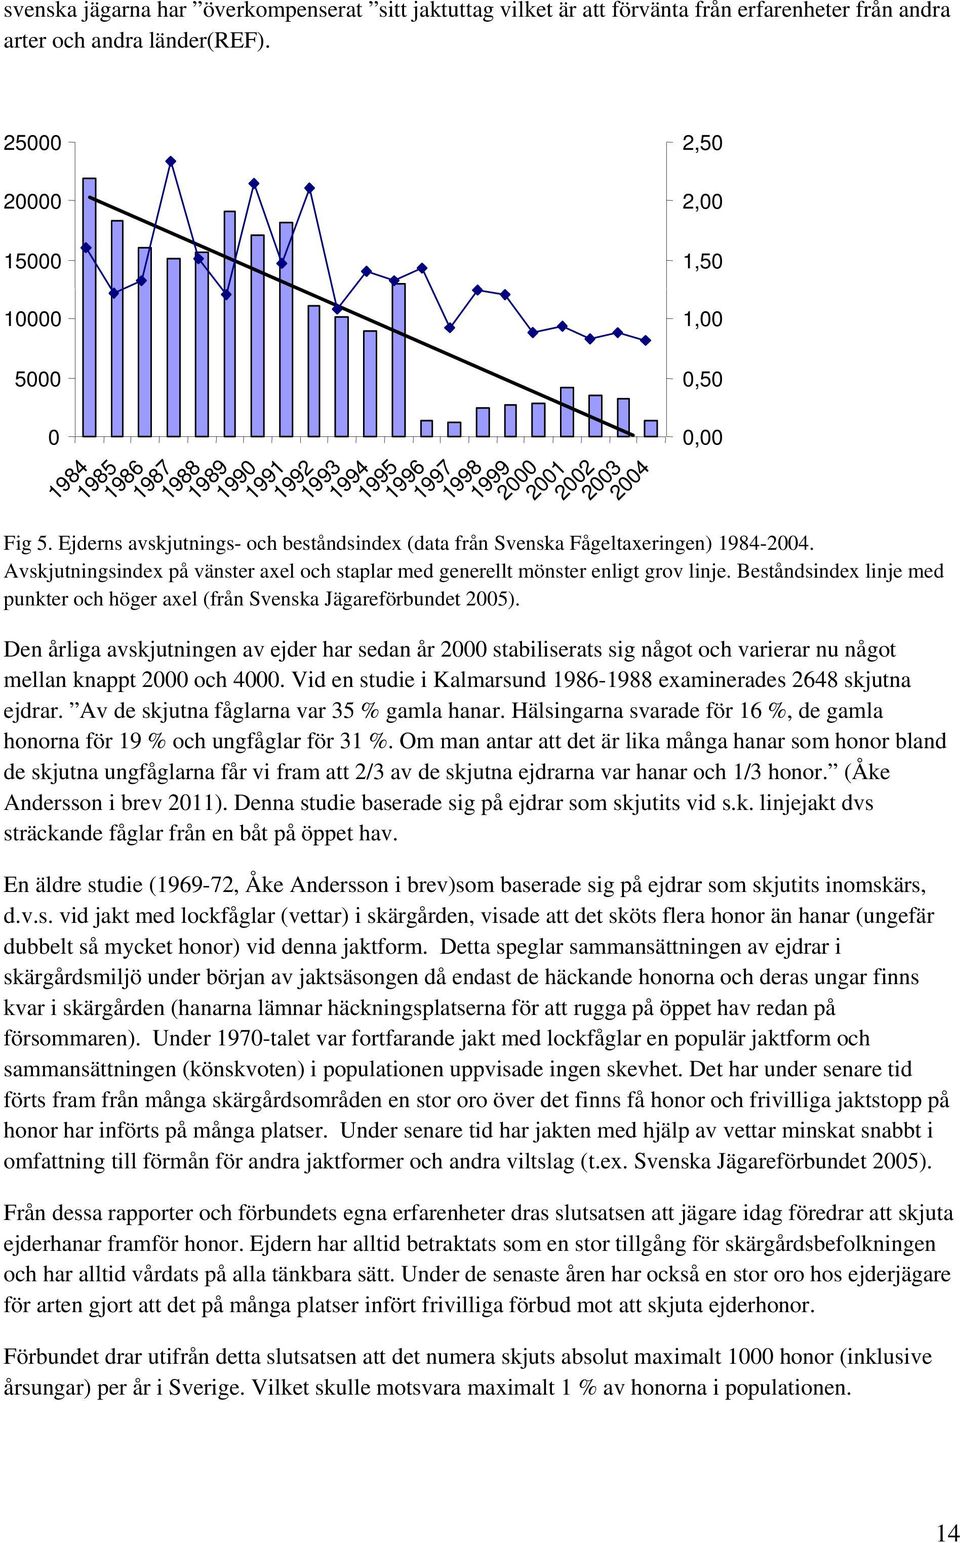 Ejderns avskjutnings- och beståndsindex (data från Svenska Fågeltaxeringen) 1984-2004. Avskjutningsindex på vänster axel och staplar med generellt mönster enligt grov linje.